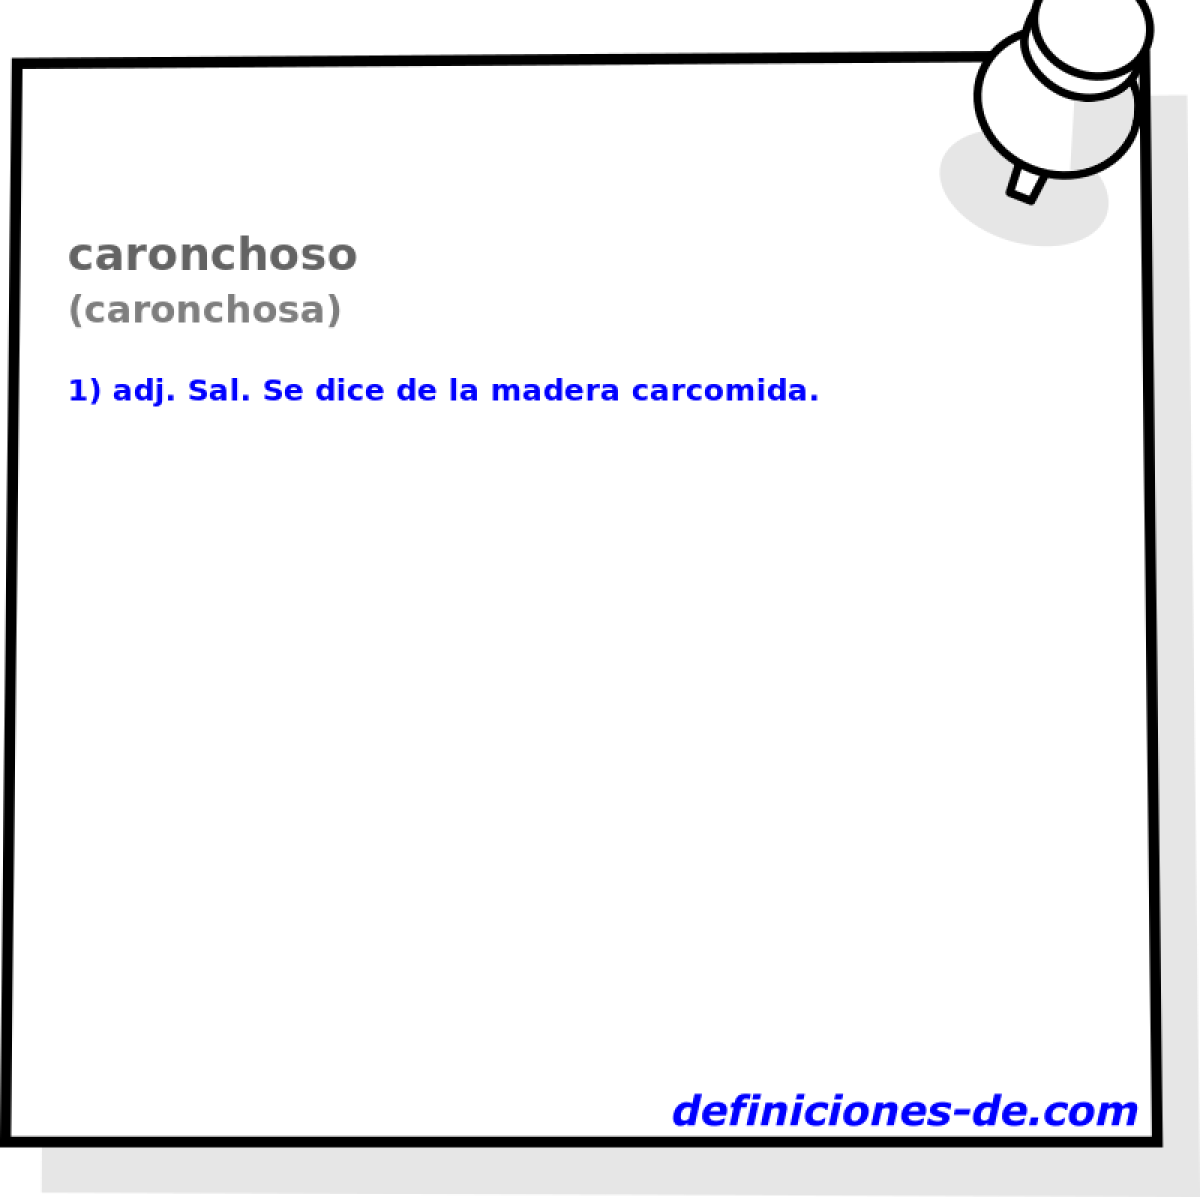 caronchoso (caronchosa)